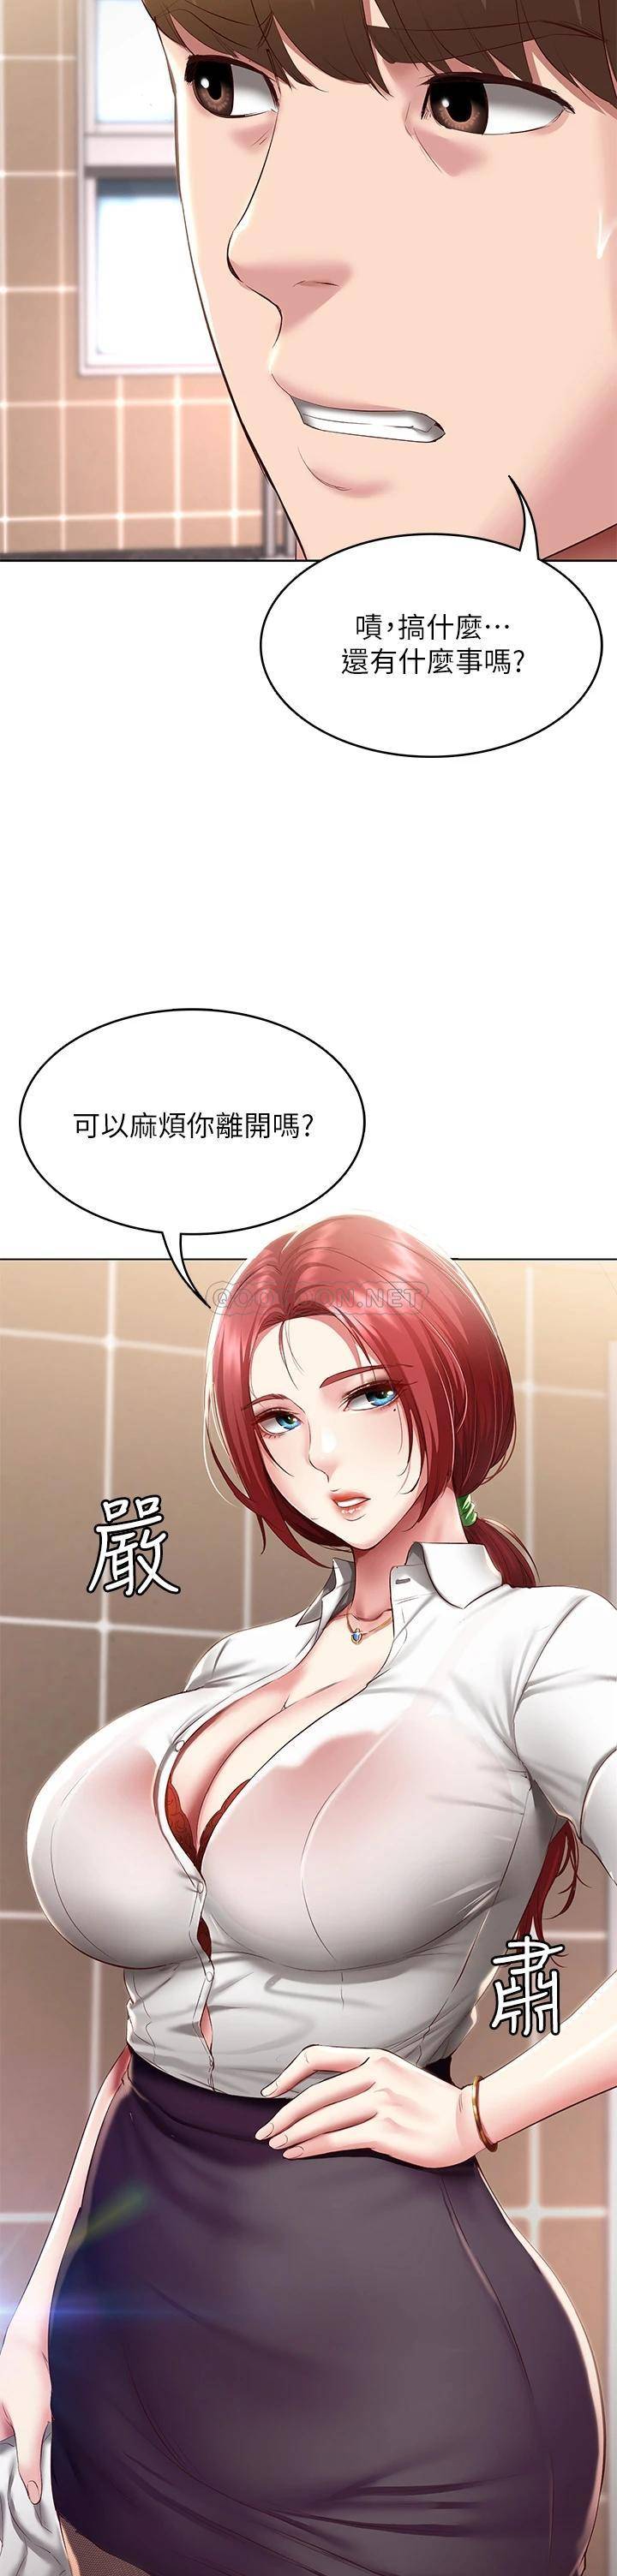 韩国污漫画 寄宿日記 第93话在厕所认识的女人 3